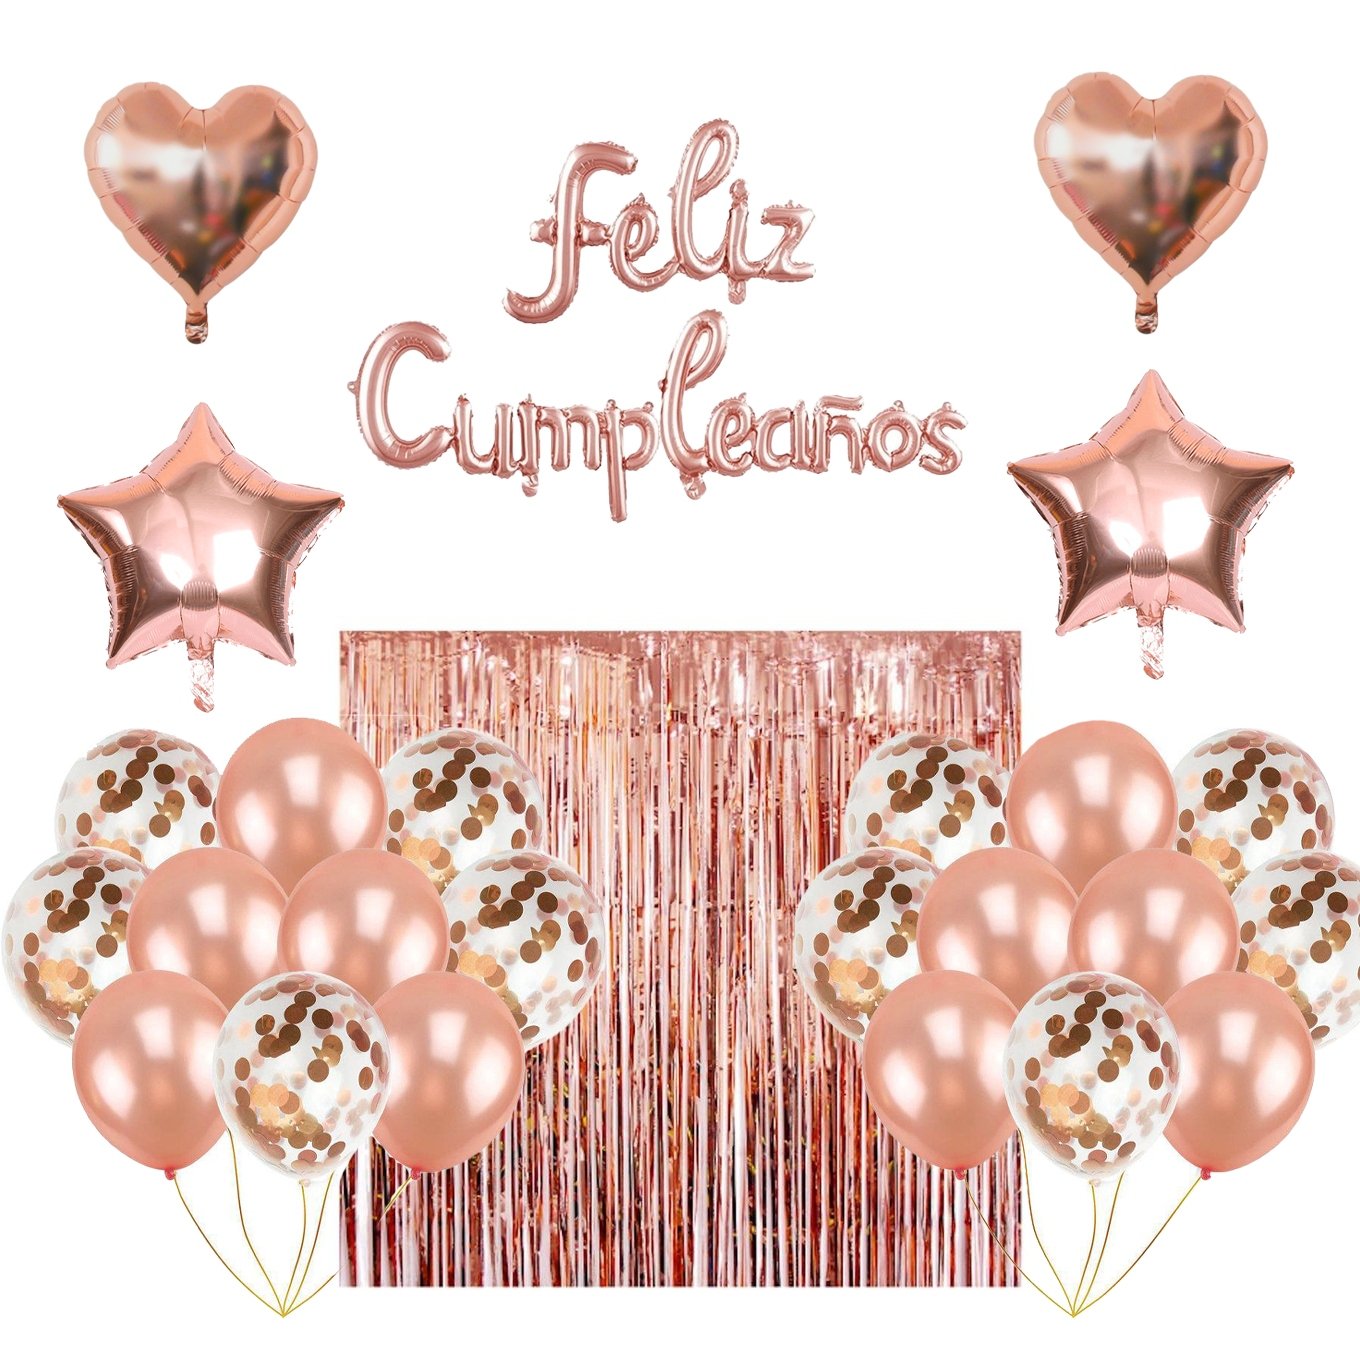 Set de globos feliz cumpleaños con cortina